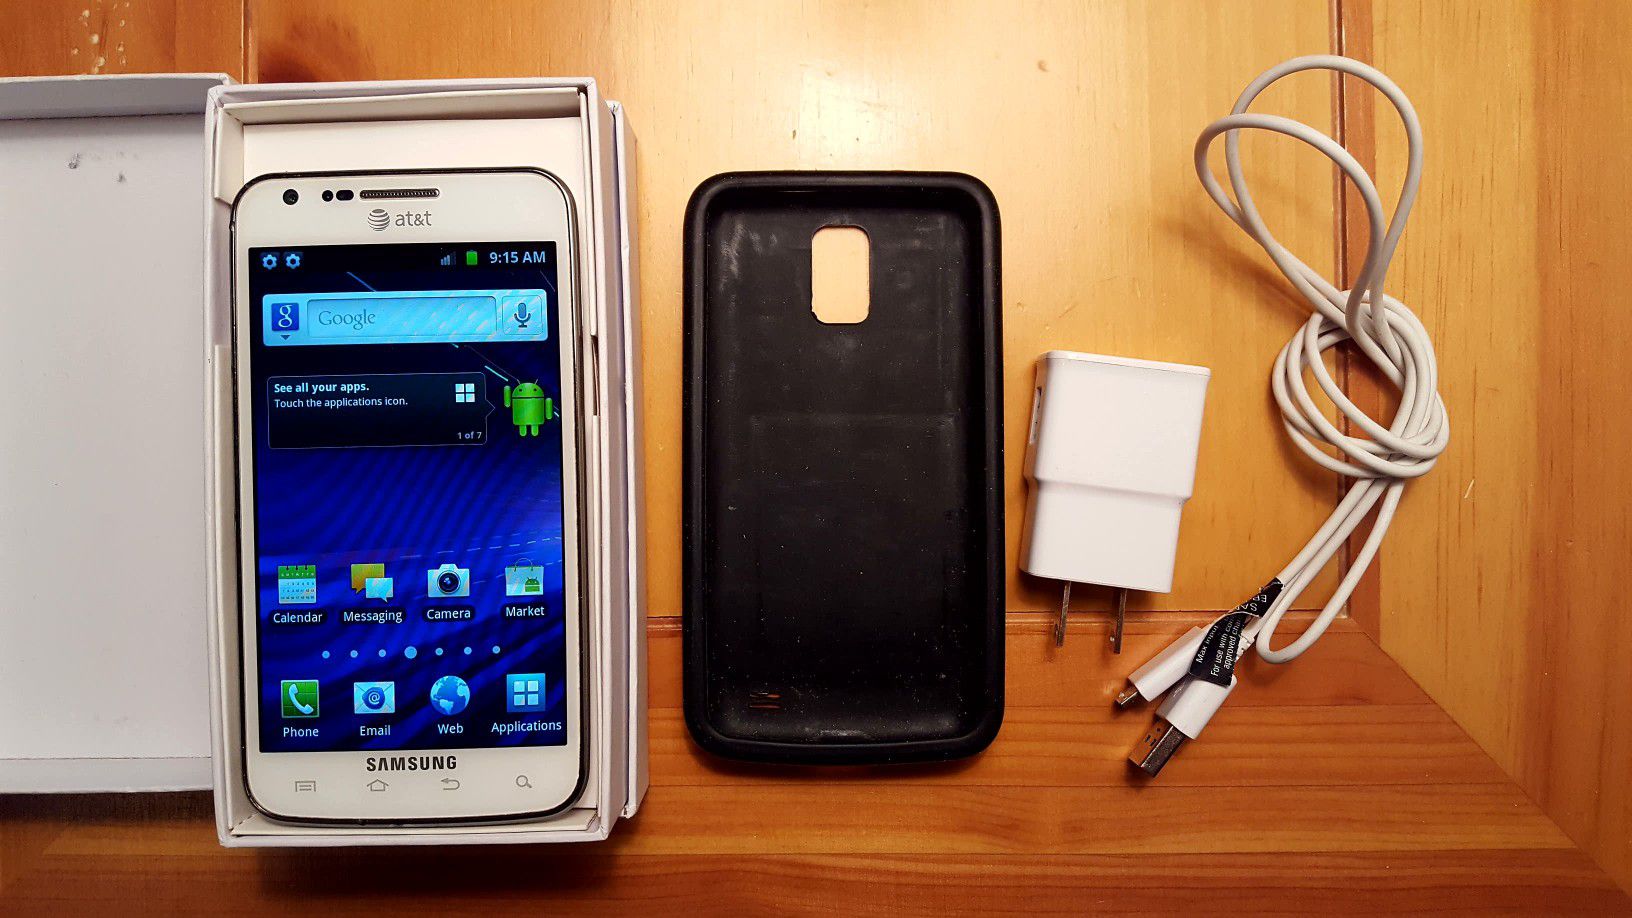 8Gb Samsung AT&T Galaxy SII Skyrocket – Works Great!